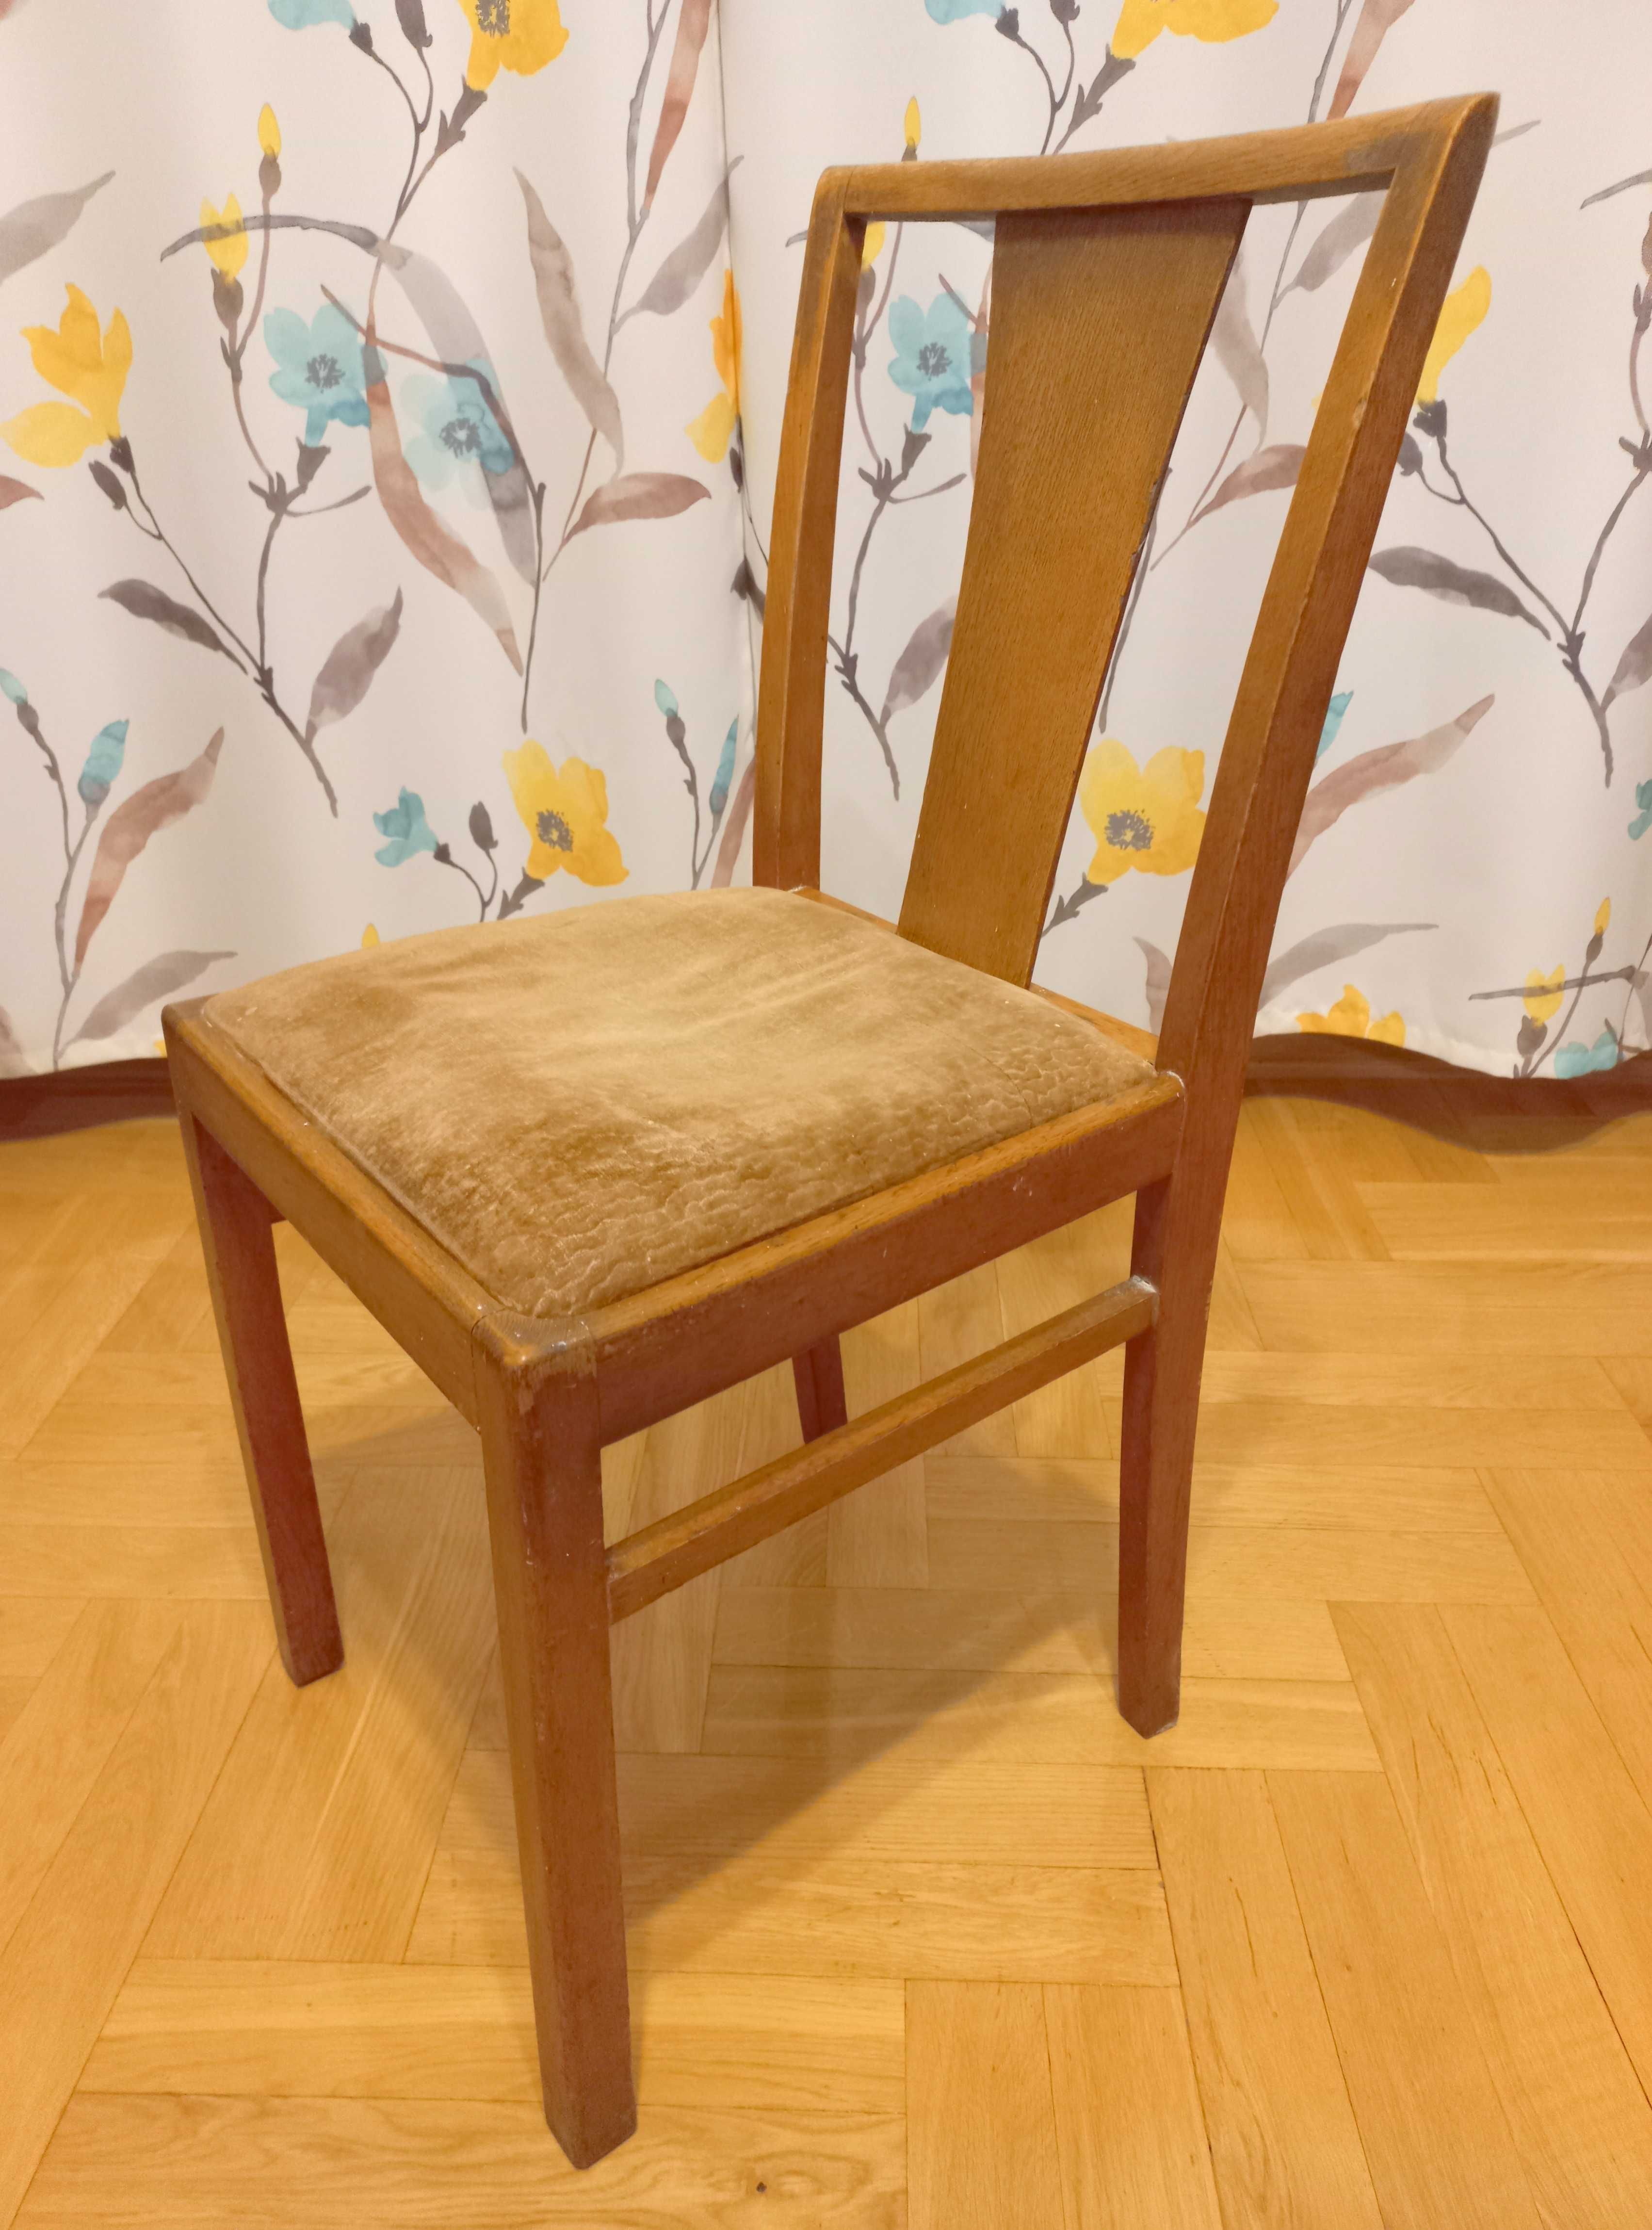 4 Krzesła - polski Design, PRL '60 Vintage do odnowienia renowacji